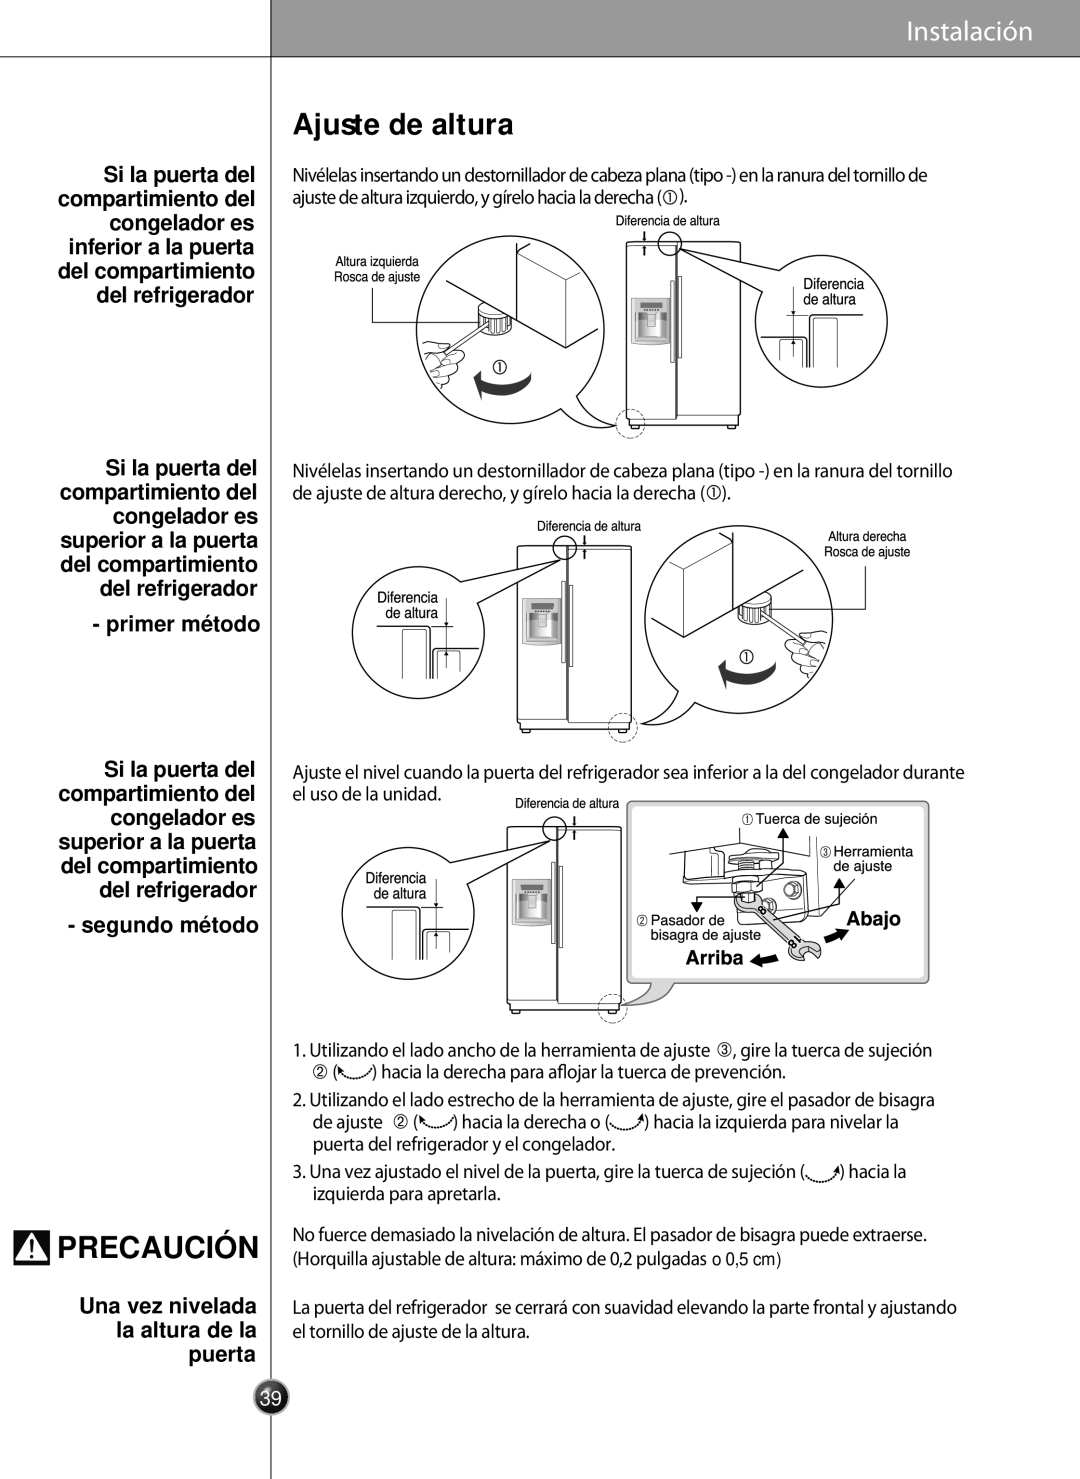 LG Electronics LSC26905 owner manual Ajuste de altura, Precaución, primer método, segundo método, Instalación 